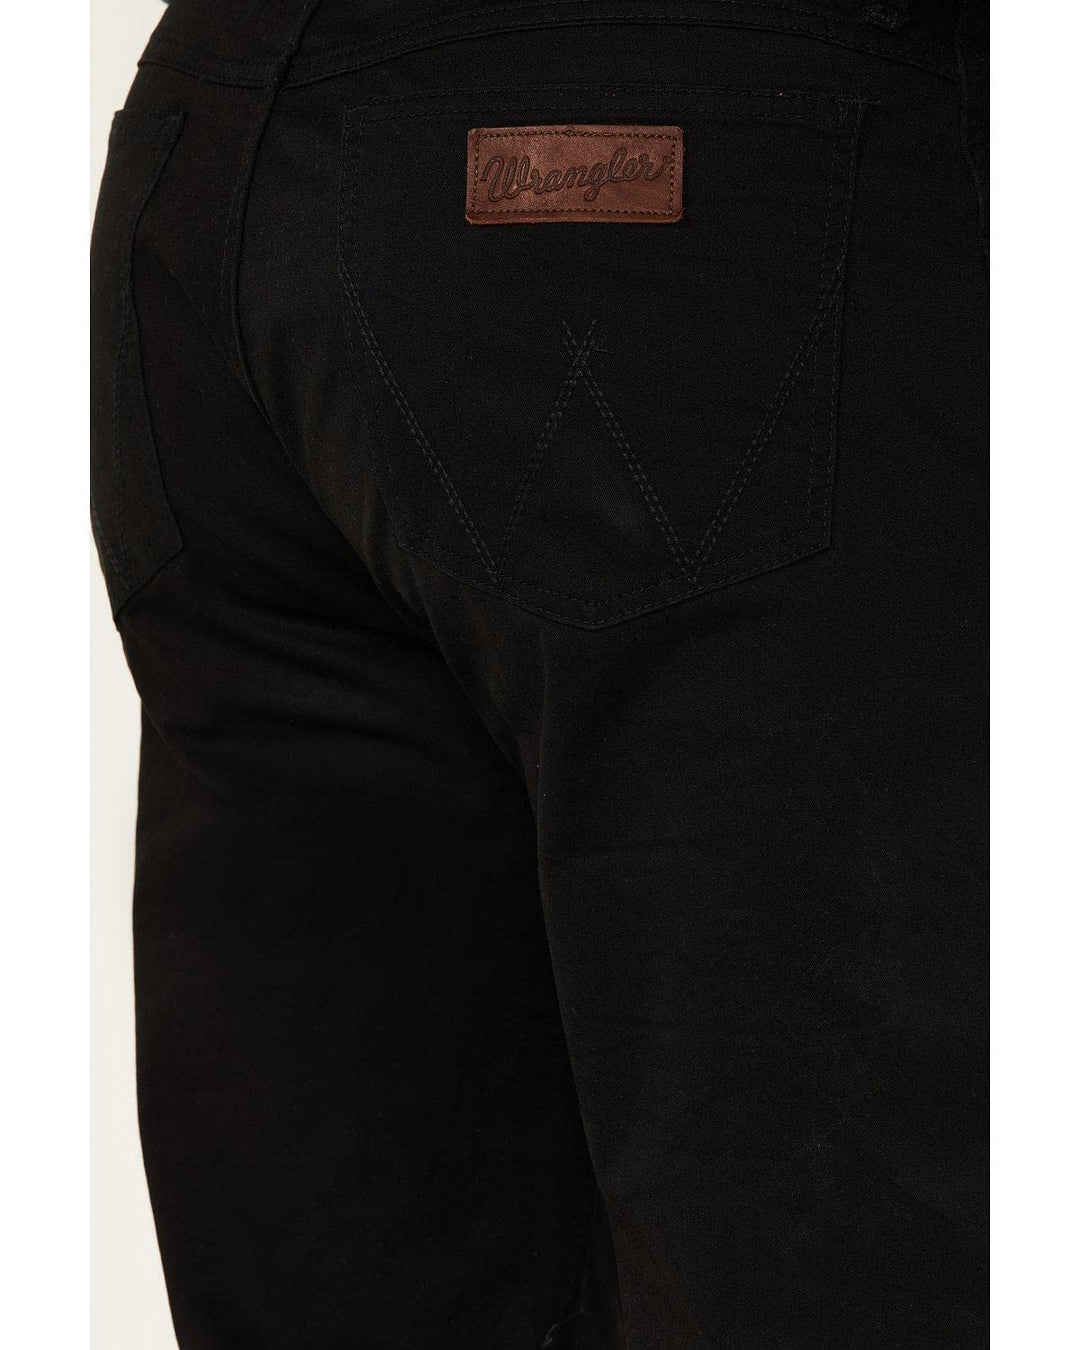 Wrangler Men's Retro Slim Fit Straight Leg Jean, Black, 32W x 34L